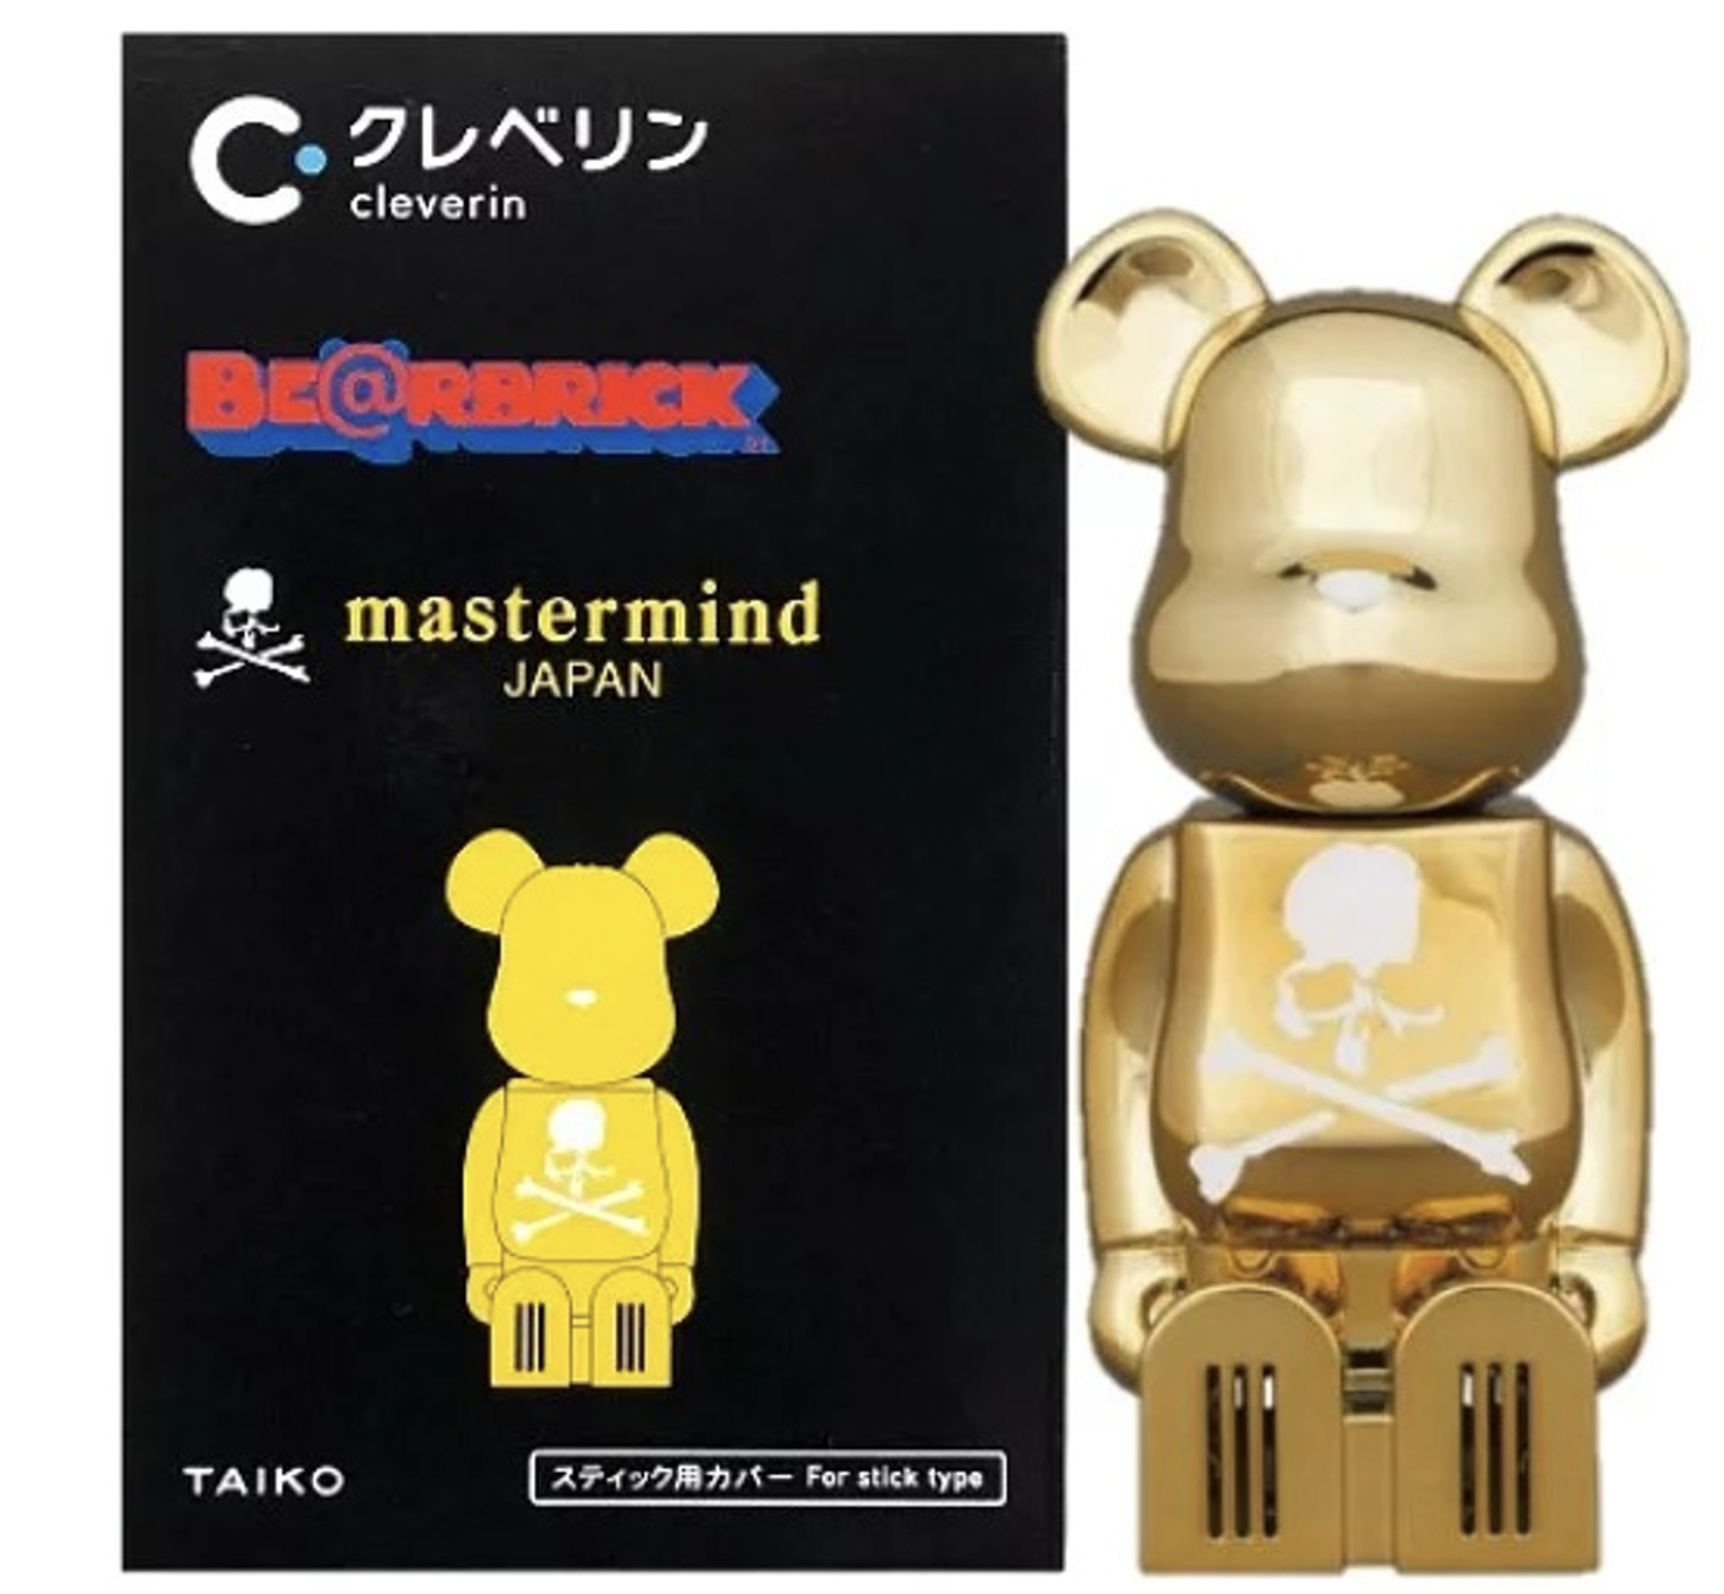 Bearbrick Mastermind Japan Limited 